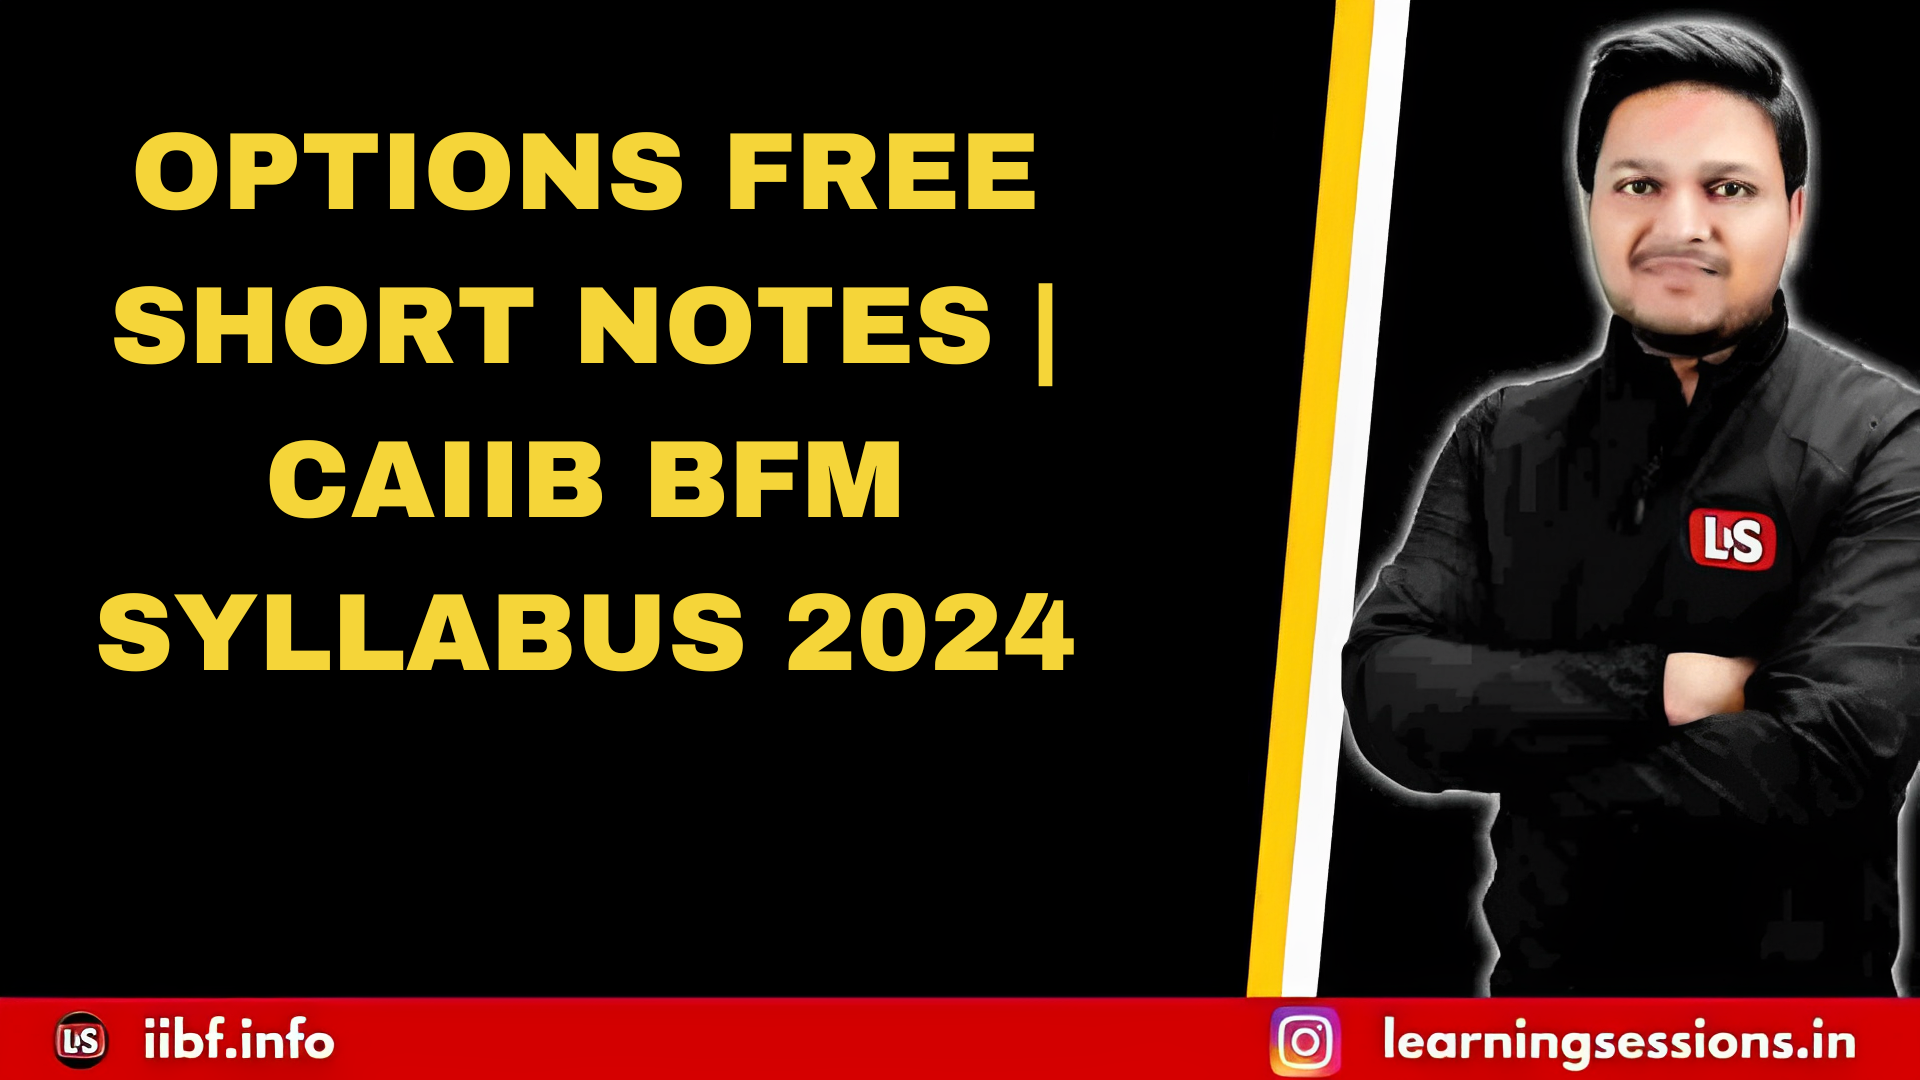 OPTIONS FREE SHORT NOTES | CAIIB BFM SYLLABUS 2024